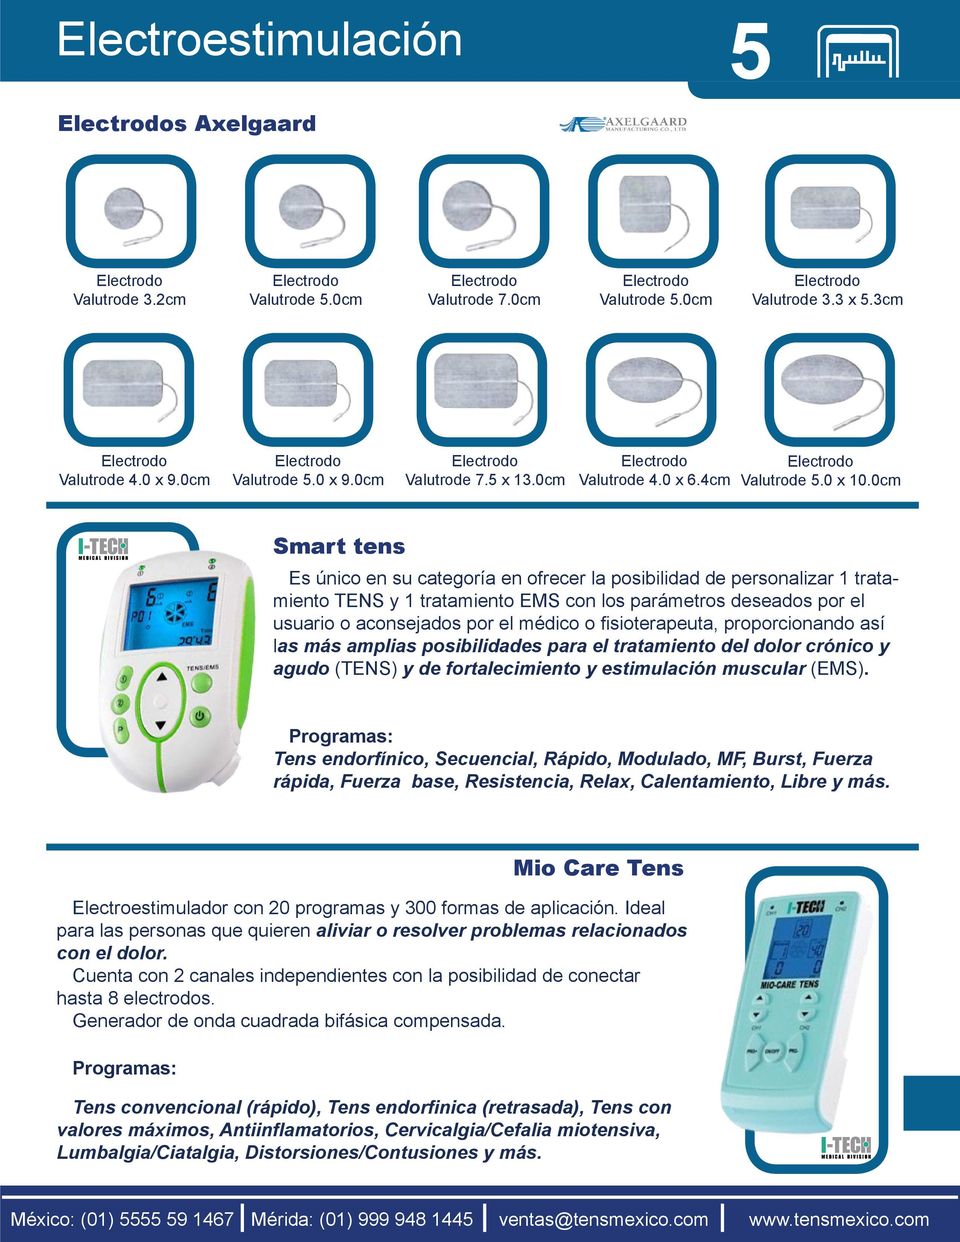 0cm Smart tens Es único en su categoría en ofrecer la posibilidad de personalizar 1 tratamiento TENS y 1 tratamiento EMS con los parámetros deseados por el usuario o aconsejados por el médico o